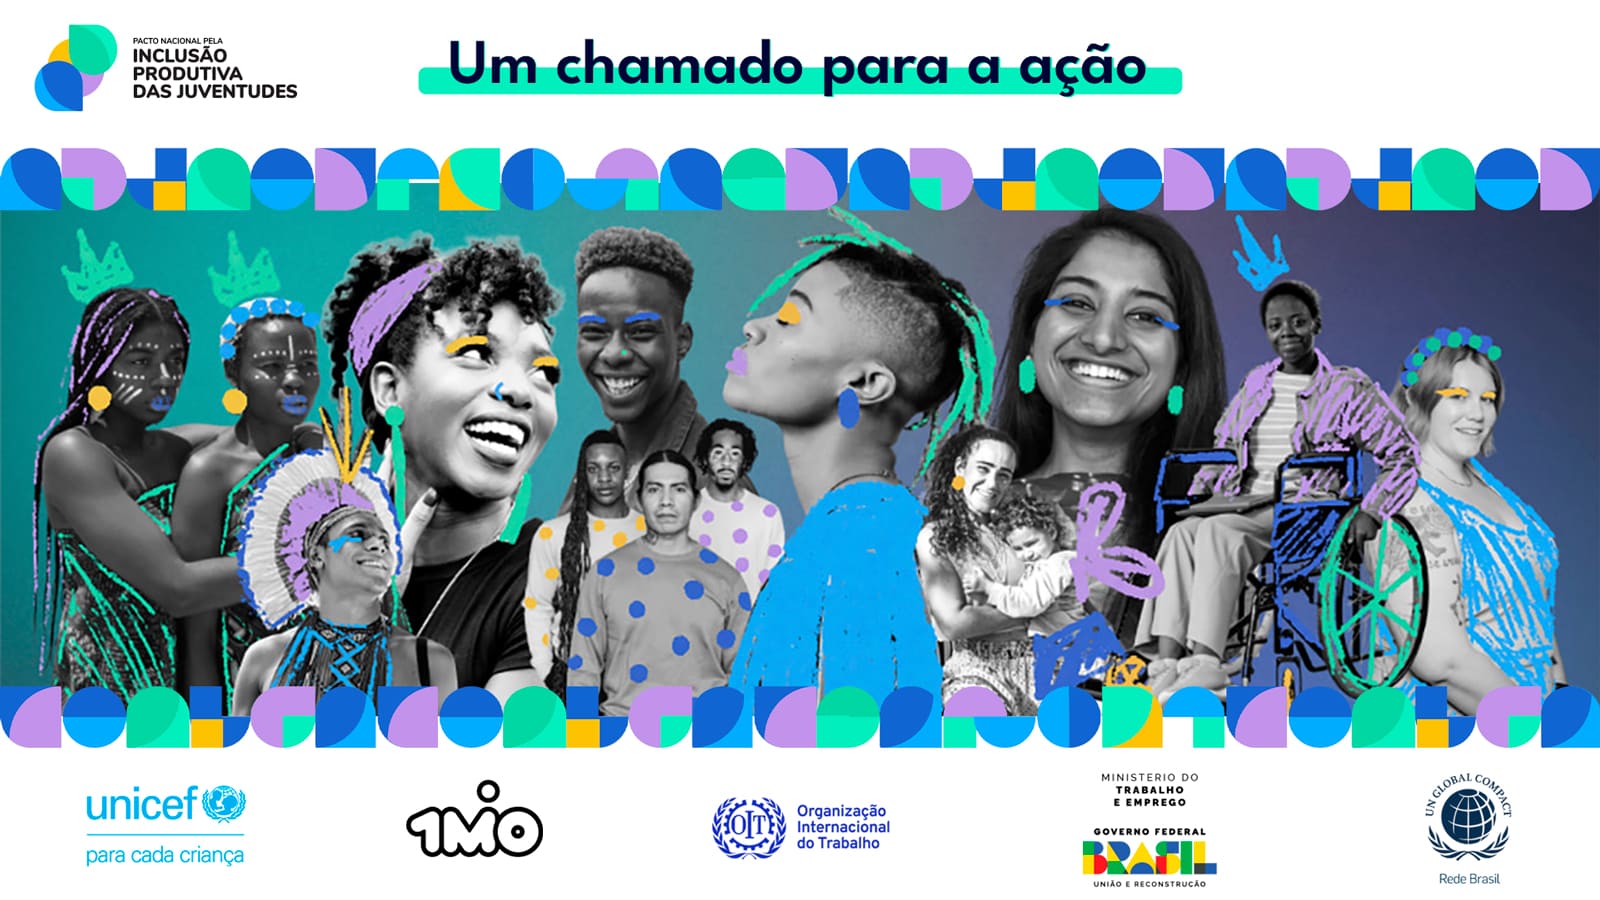 Banner ‘Um chamado para a ação’ para a Inclusão Produtiva das Juventudes, com diversas pessoas jovens e logotipos da Unicef, OIT e Brasil.